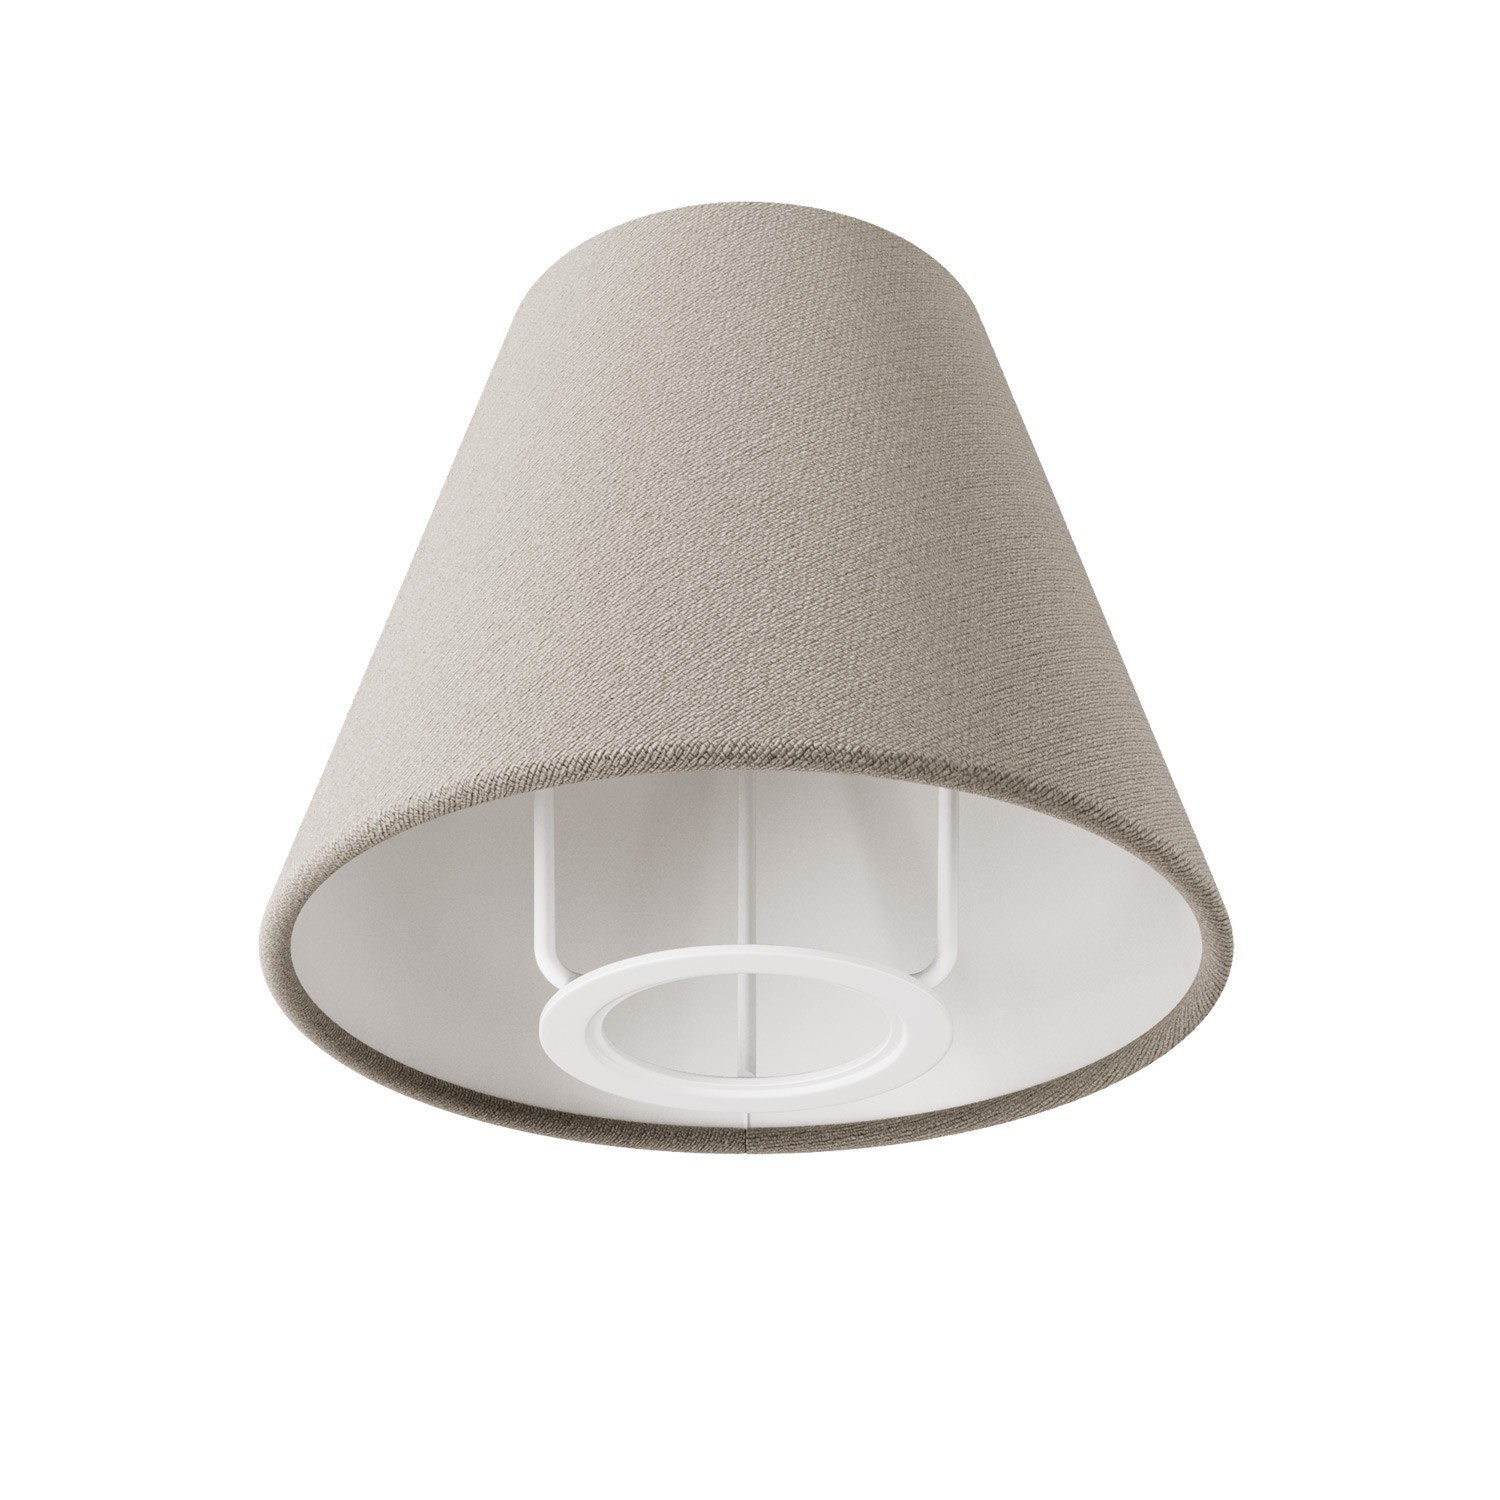 Impero Mini lampenkap met E27 formaat voor muurbevestiging of tafellampen